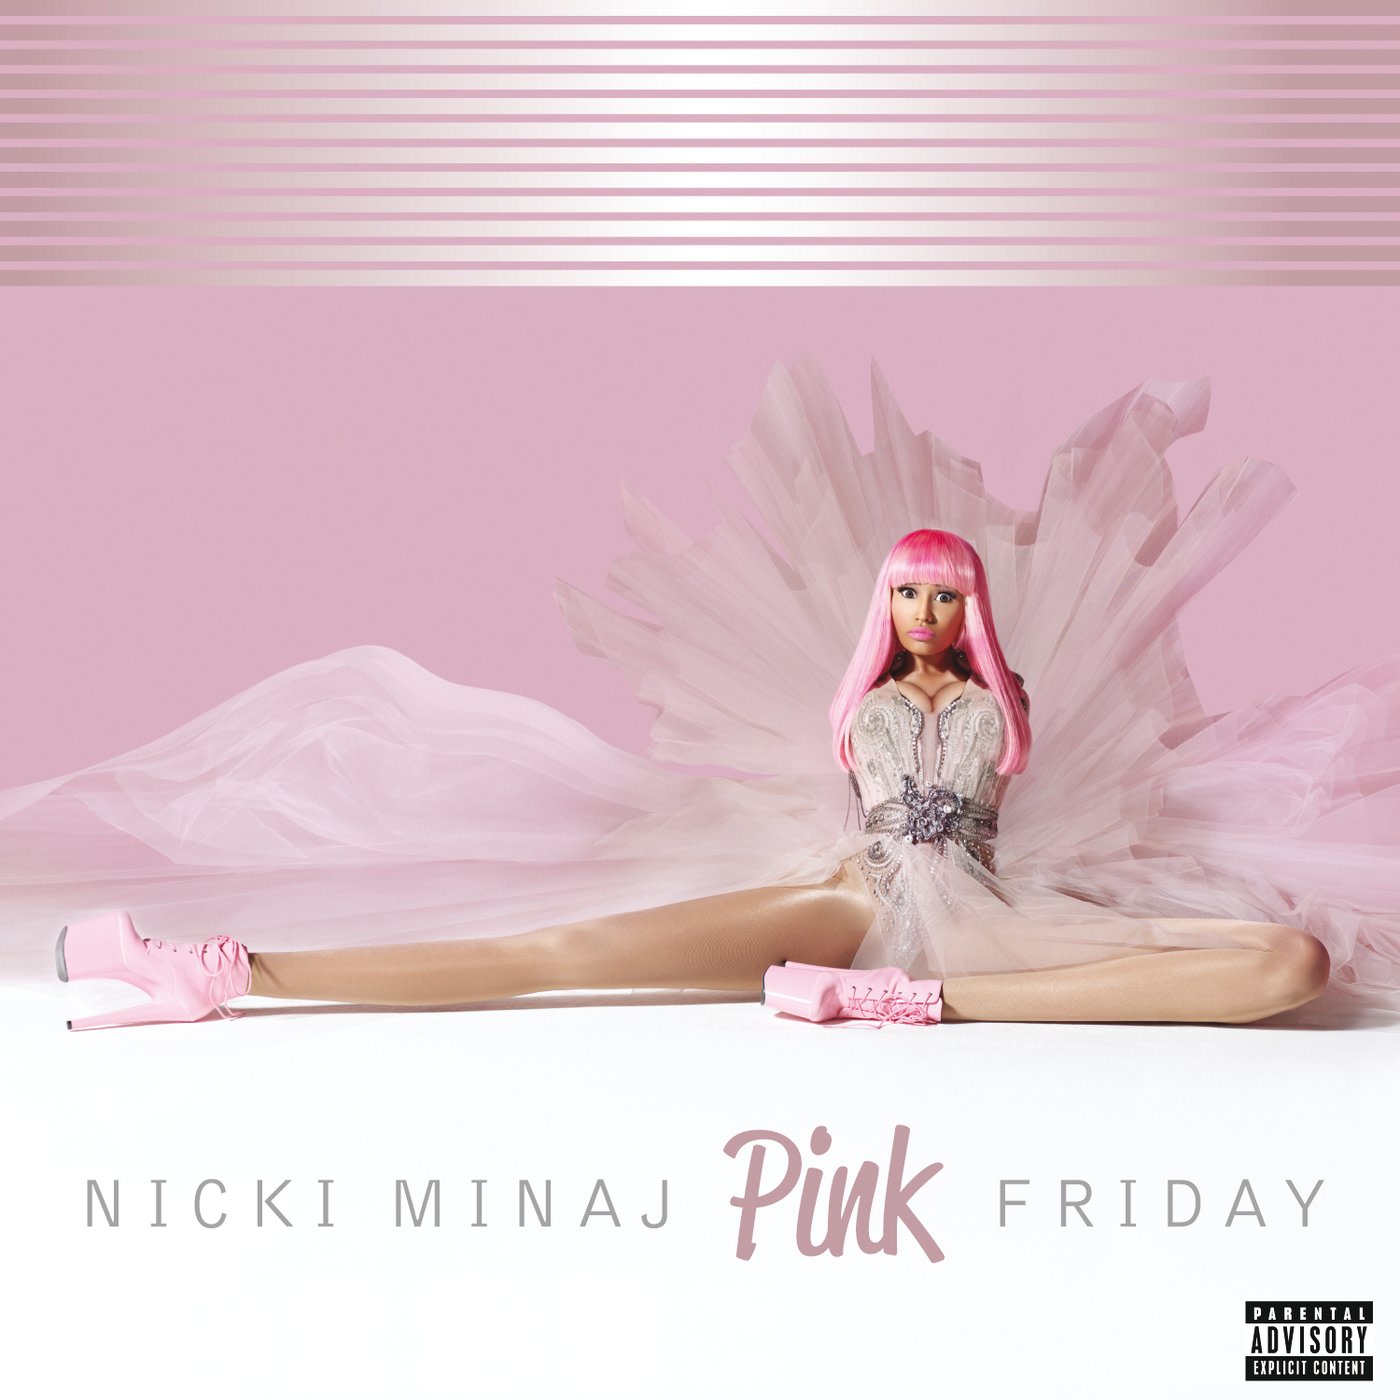 Decade of Dominance: Nicki Minaj's 'Pink Friday' Debut Turns 10